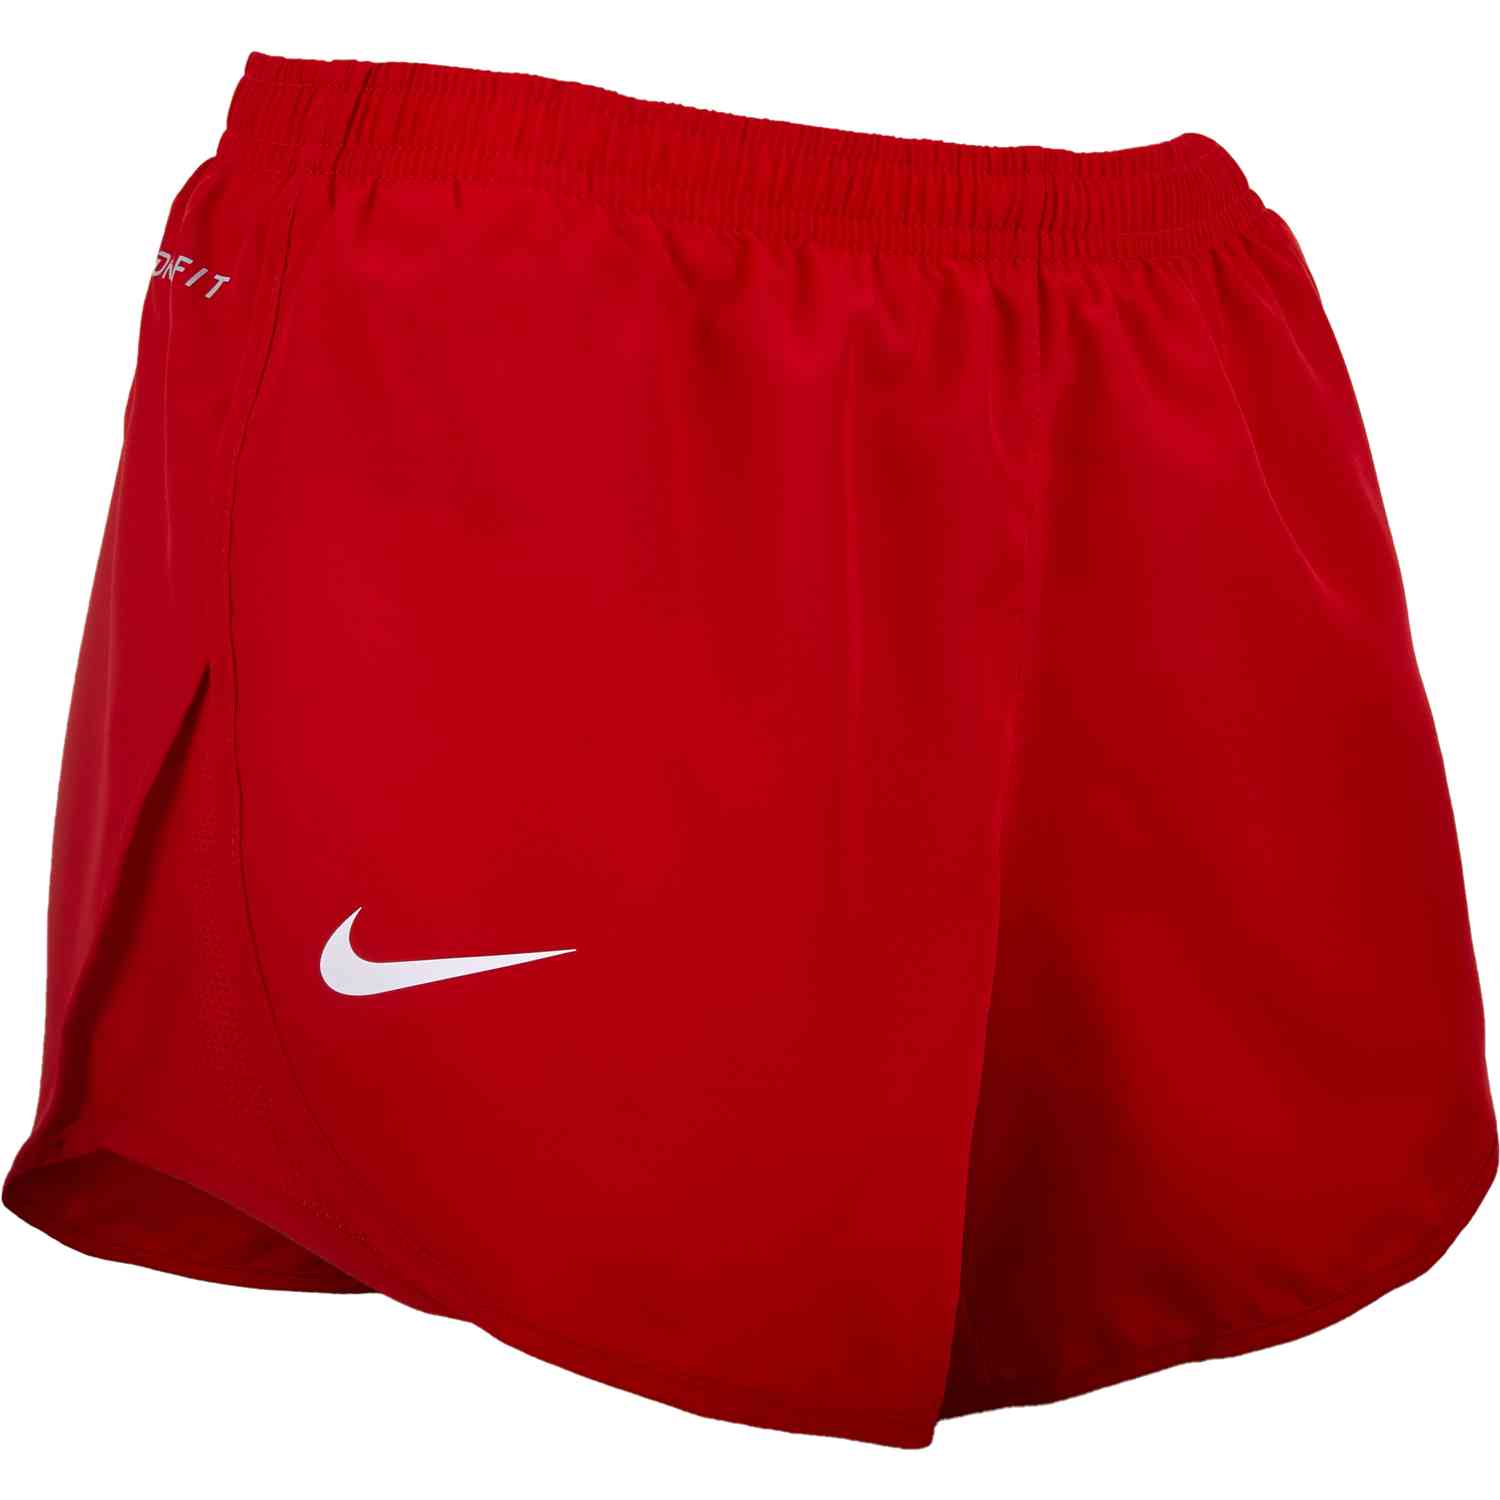 Womens Nike USWNT Tempo Shorts - University Red - SoccerPro